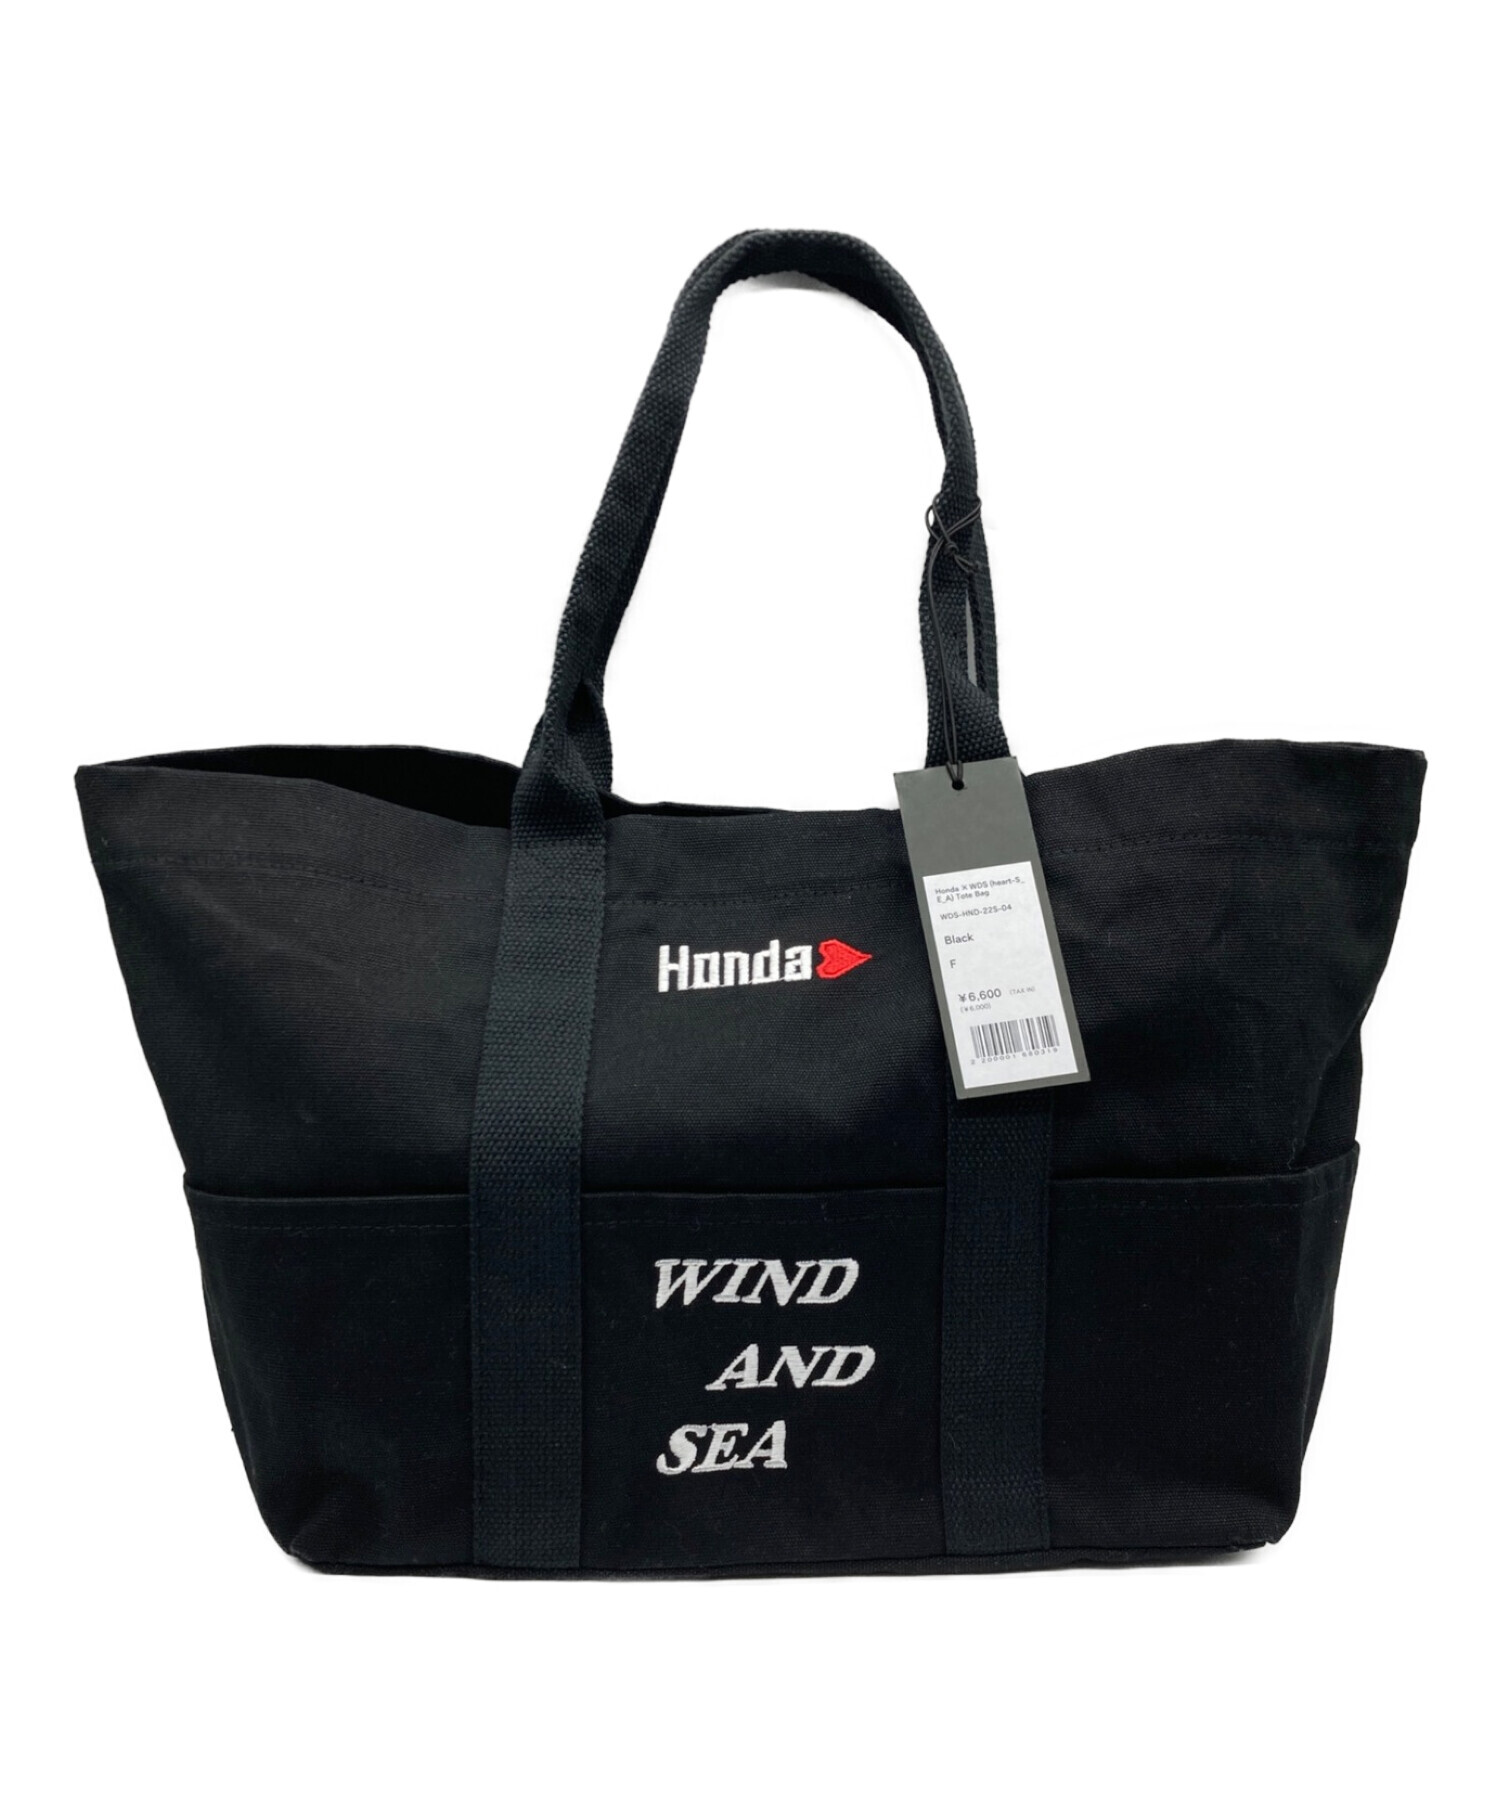 WIND AND SEA (ウィンダンシー) HONDA (ホンダ) トートバッグ サイズ:Free